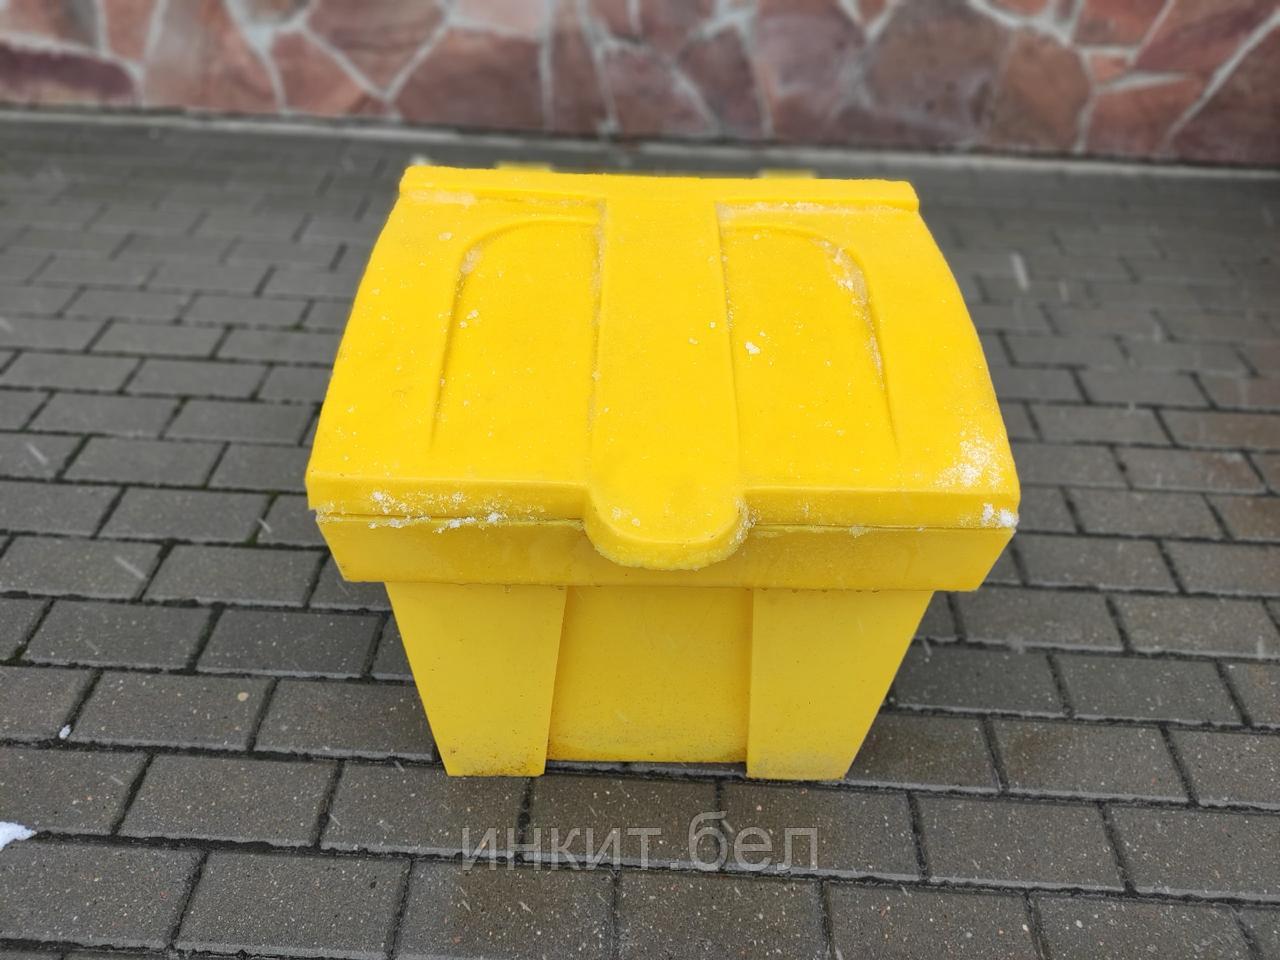 Пластиковый ящик для песка и соли 75 литров, желтый. Цена с НДС